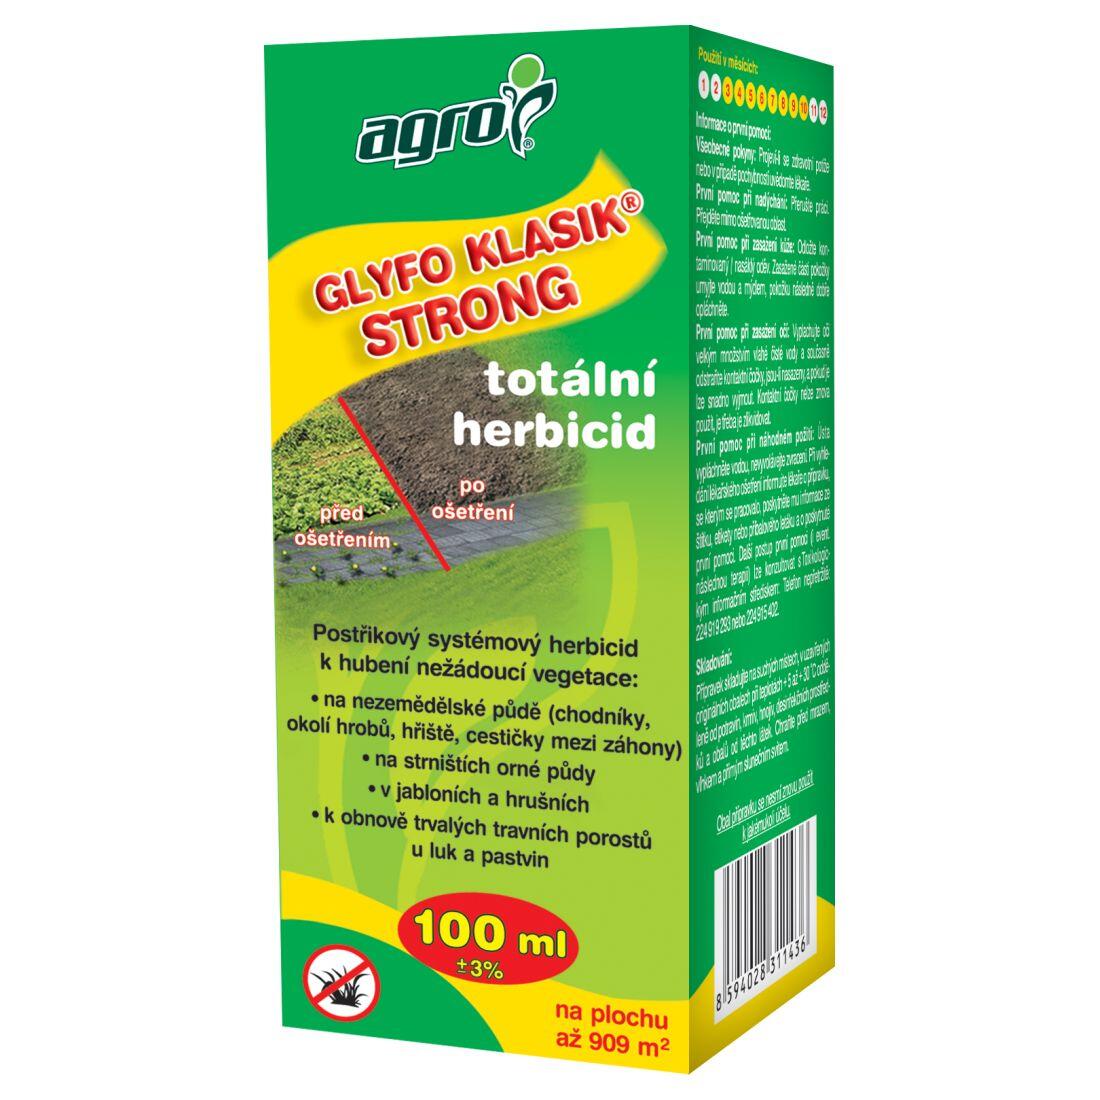 AGRO GLYFO Klasik Strong total.herbicid  100ml 0.12 Kg MAXMIX Sklad14 912623 31